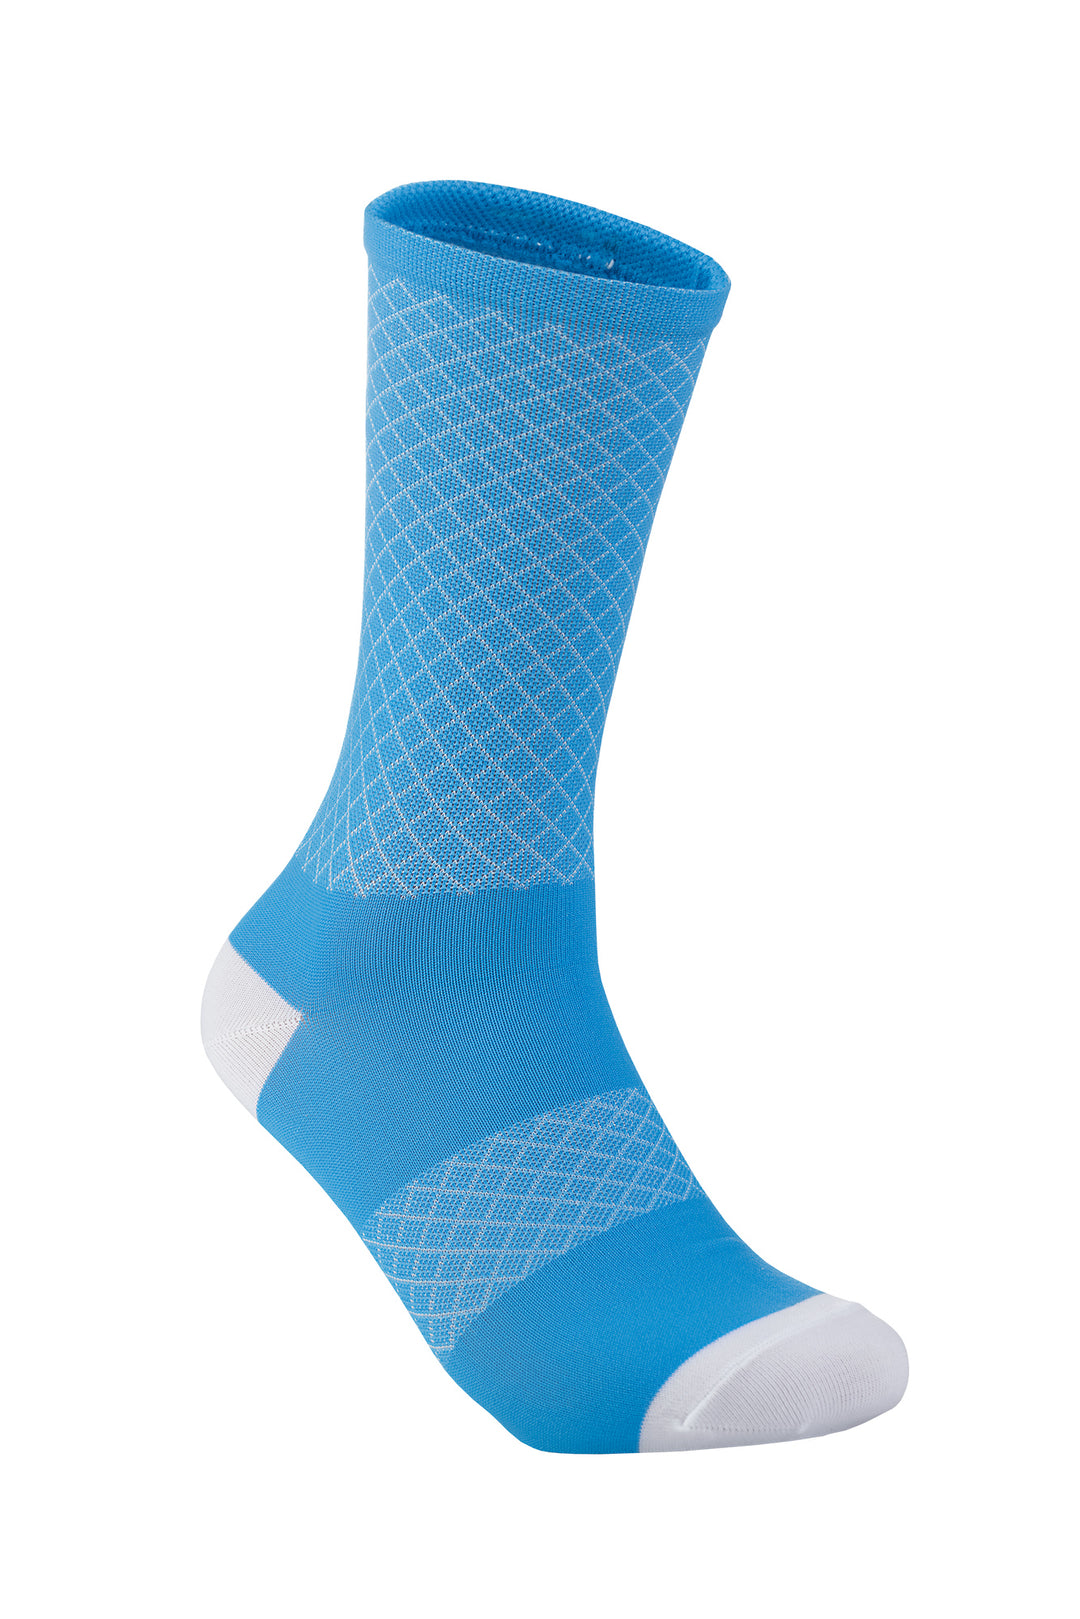 Sprinkle Support Socks - Kind Blue